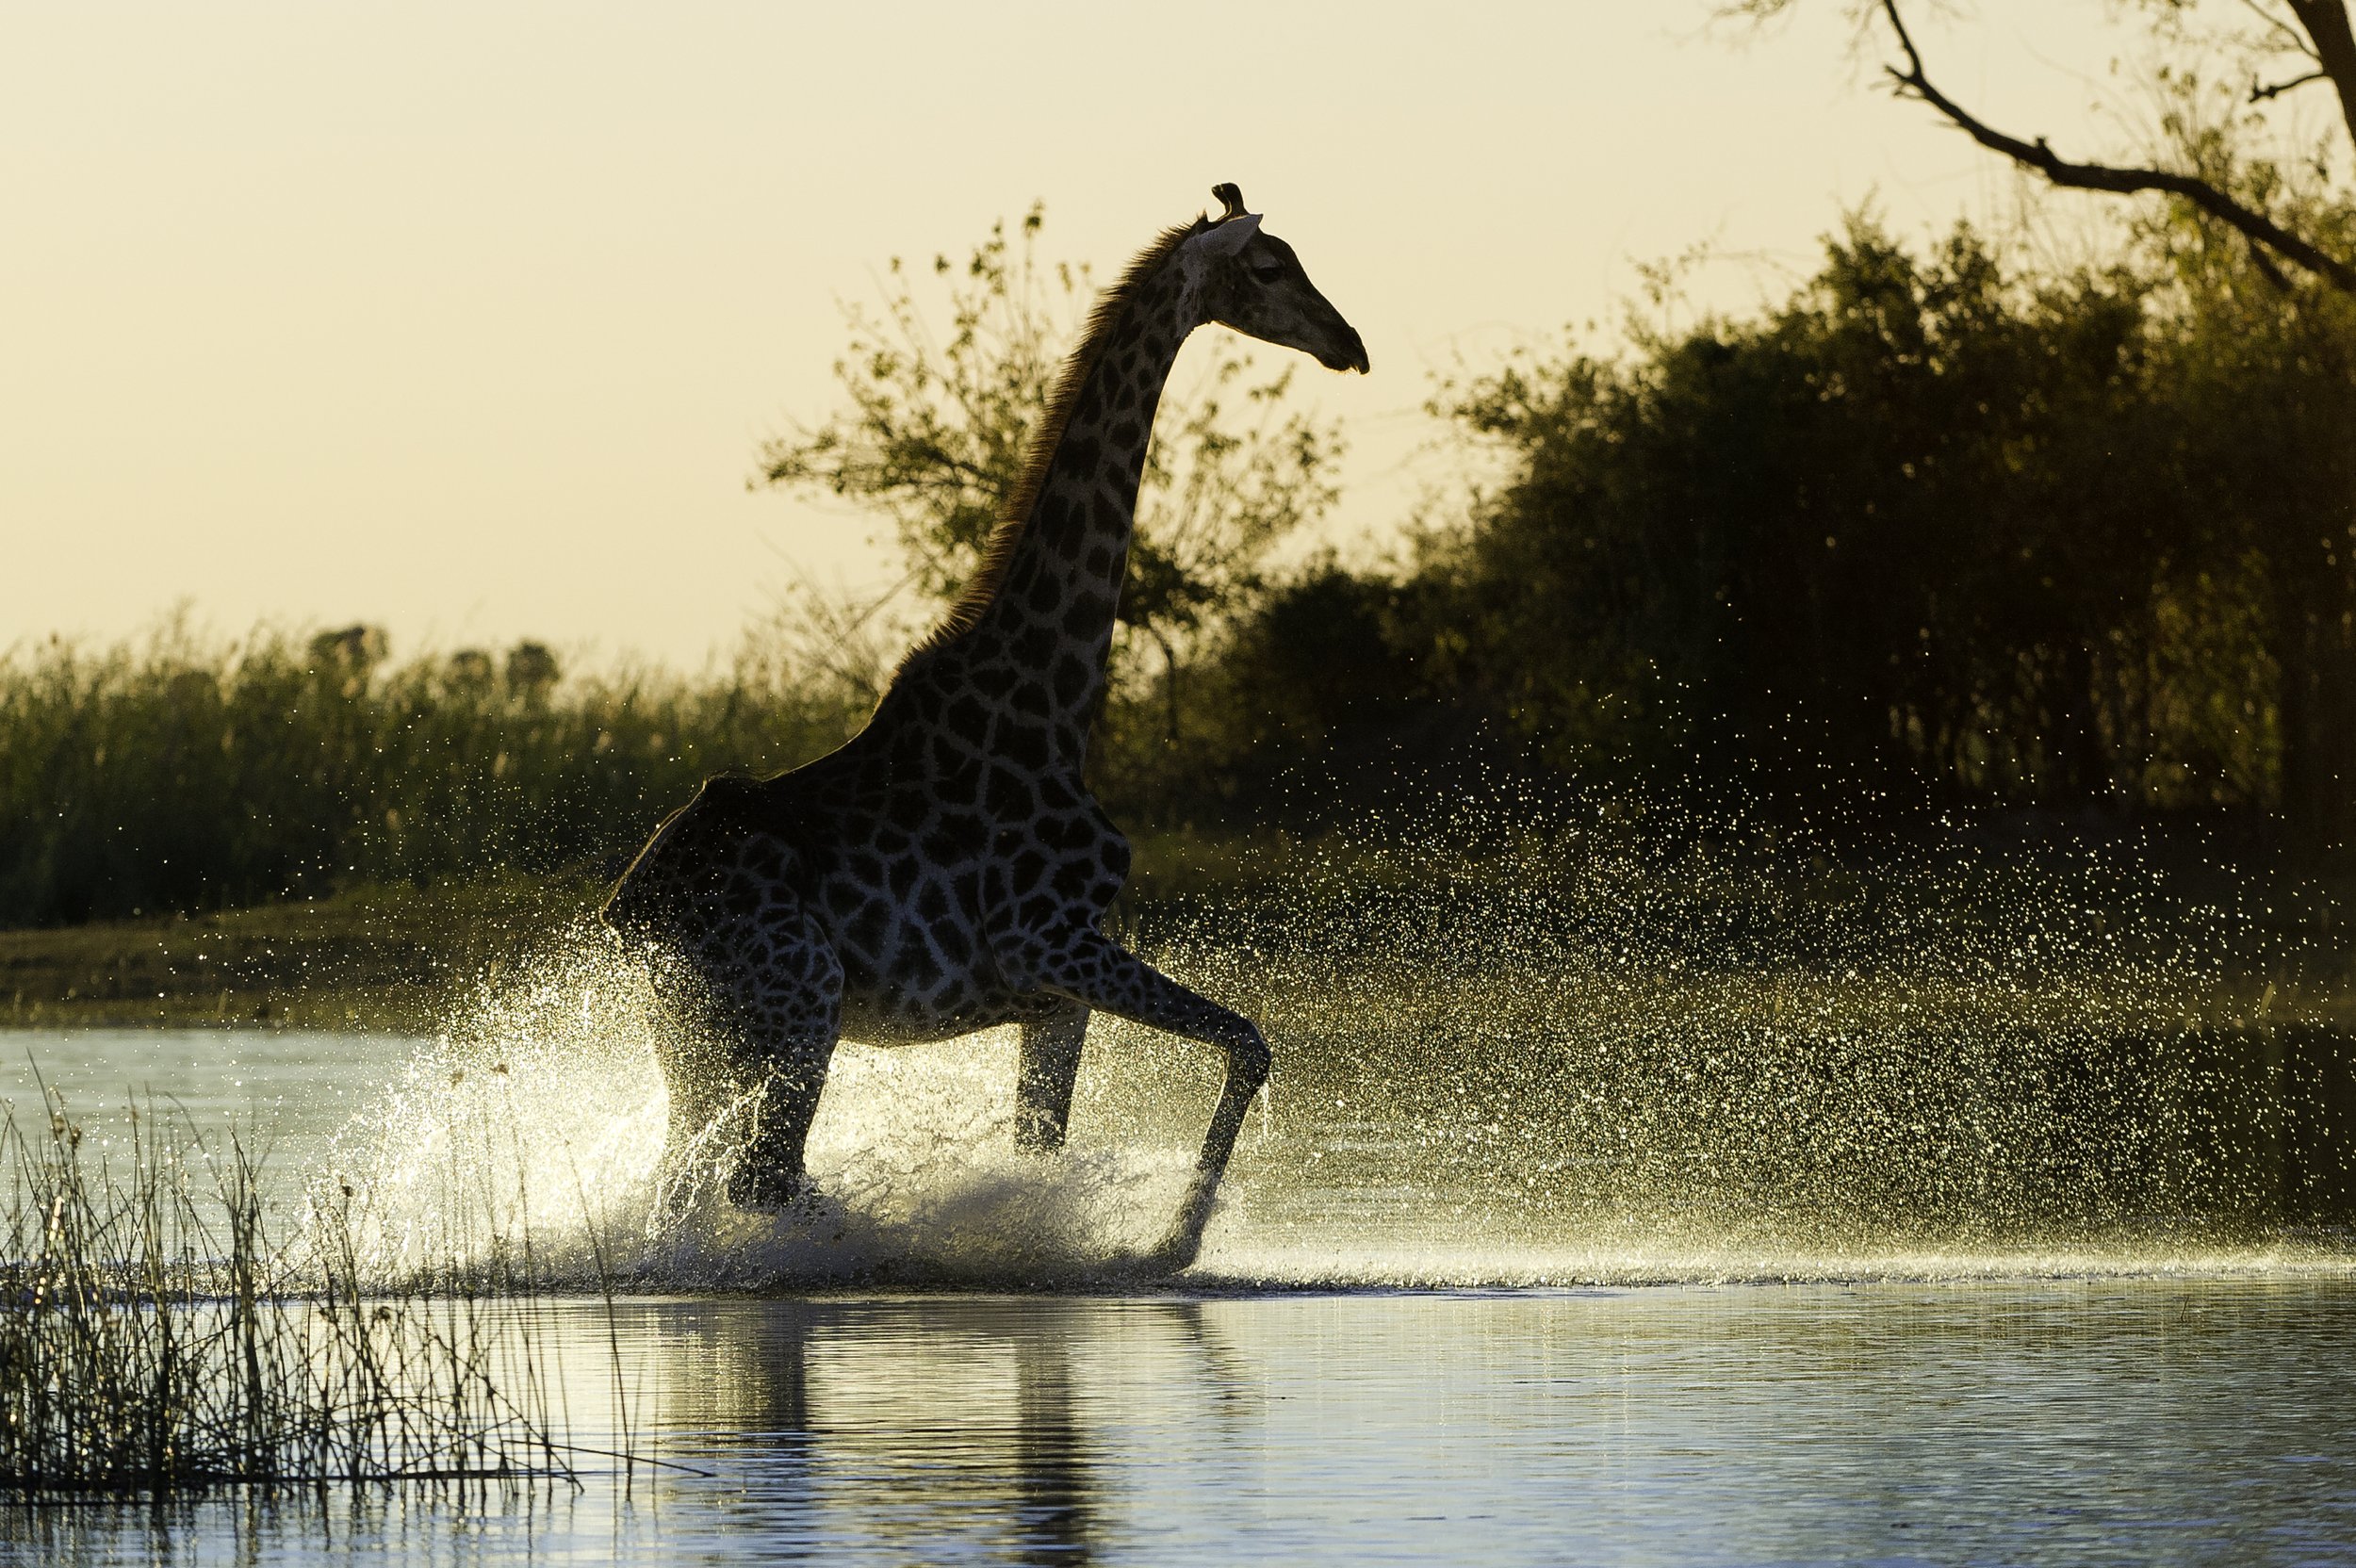 giraffe-Kings-Pool-Linyanti-Game-Reserve-Botswana-Safaris-CREDIT-Dana-Allen.jpg